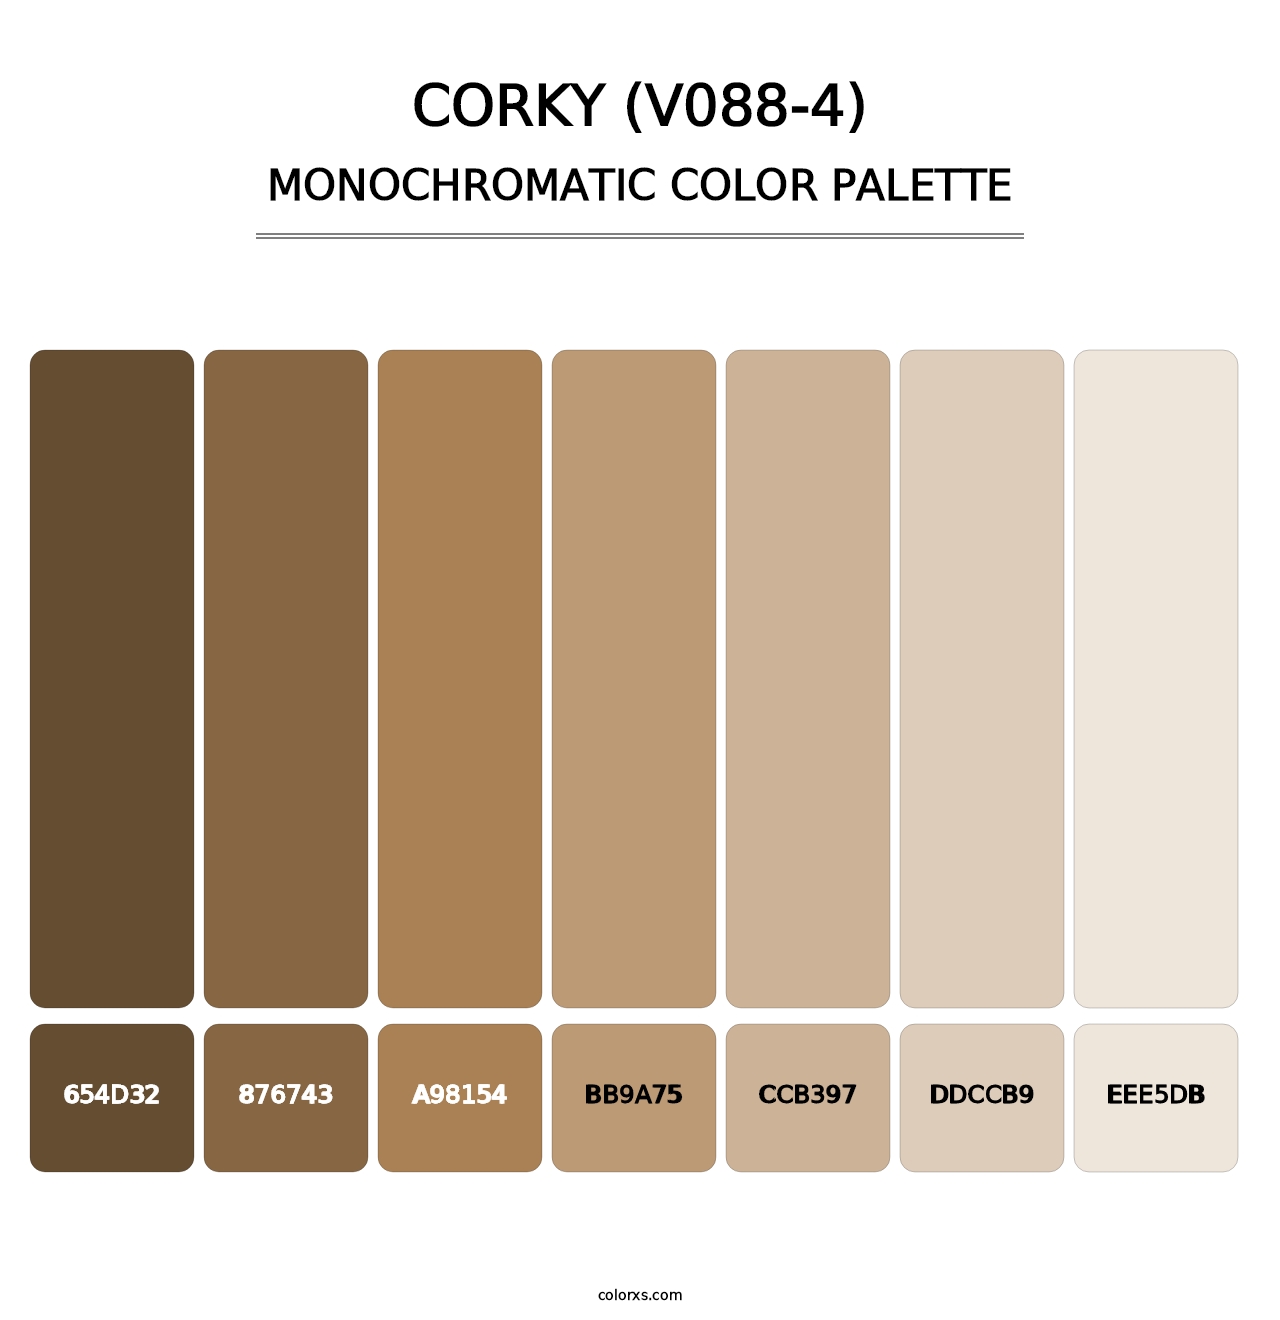 Corky (V088-4) - Monochromatic Color Palette